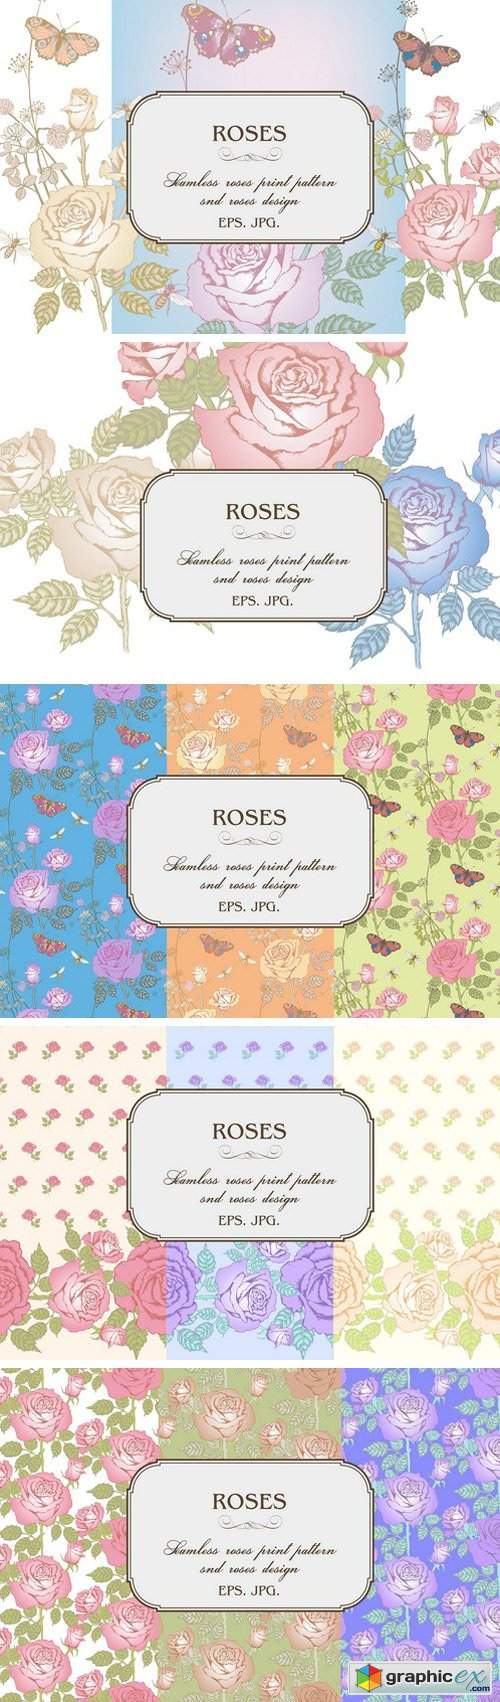 Design of roses